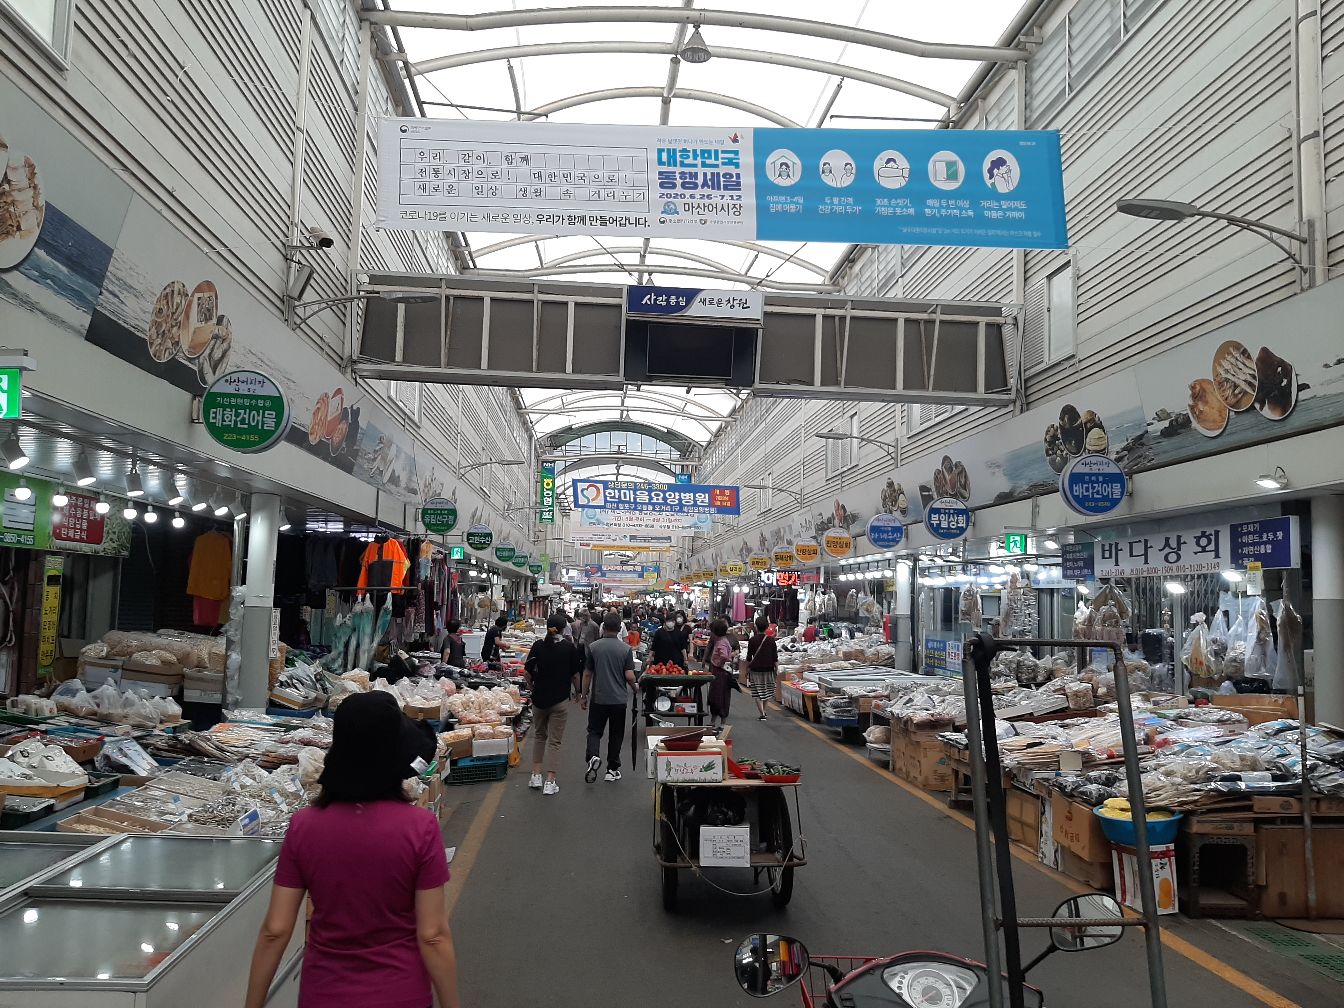 哈喽~我在韩国中部海边小城市---昌原市(창원시)~这里有很大的鱼市场叫马上鱼市场(마산어시장)可以